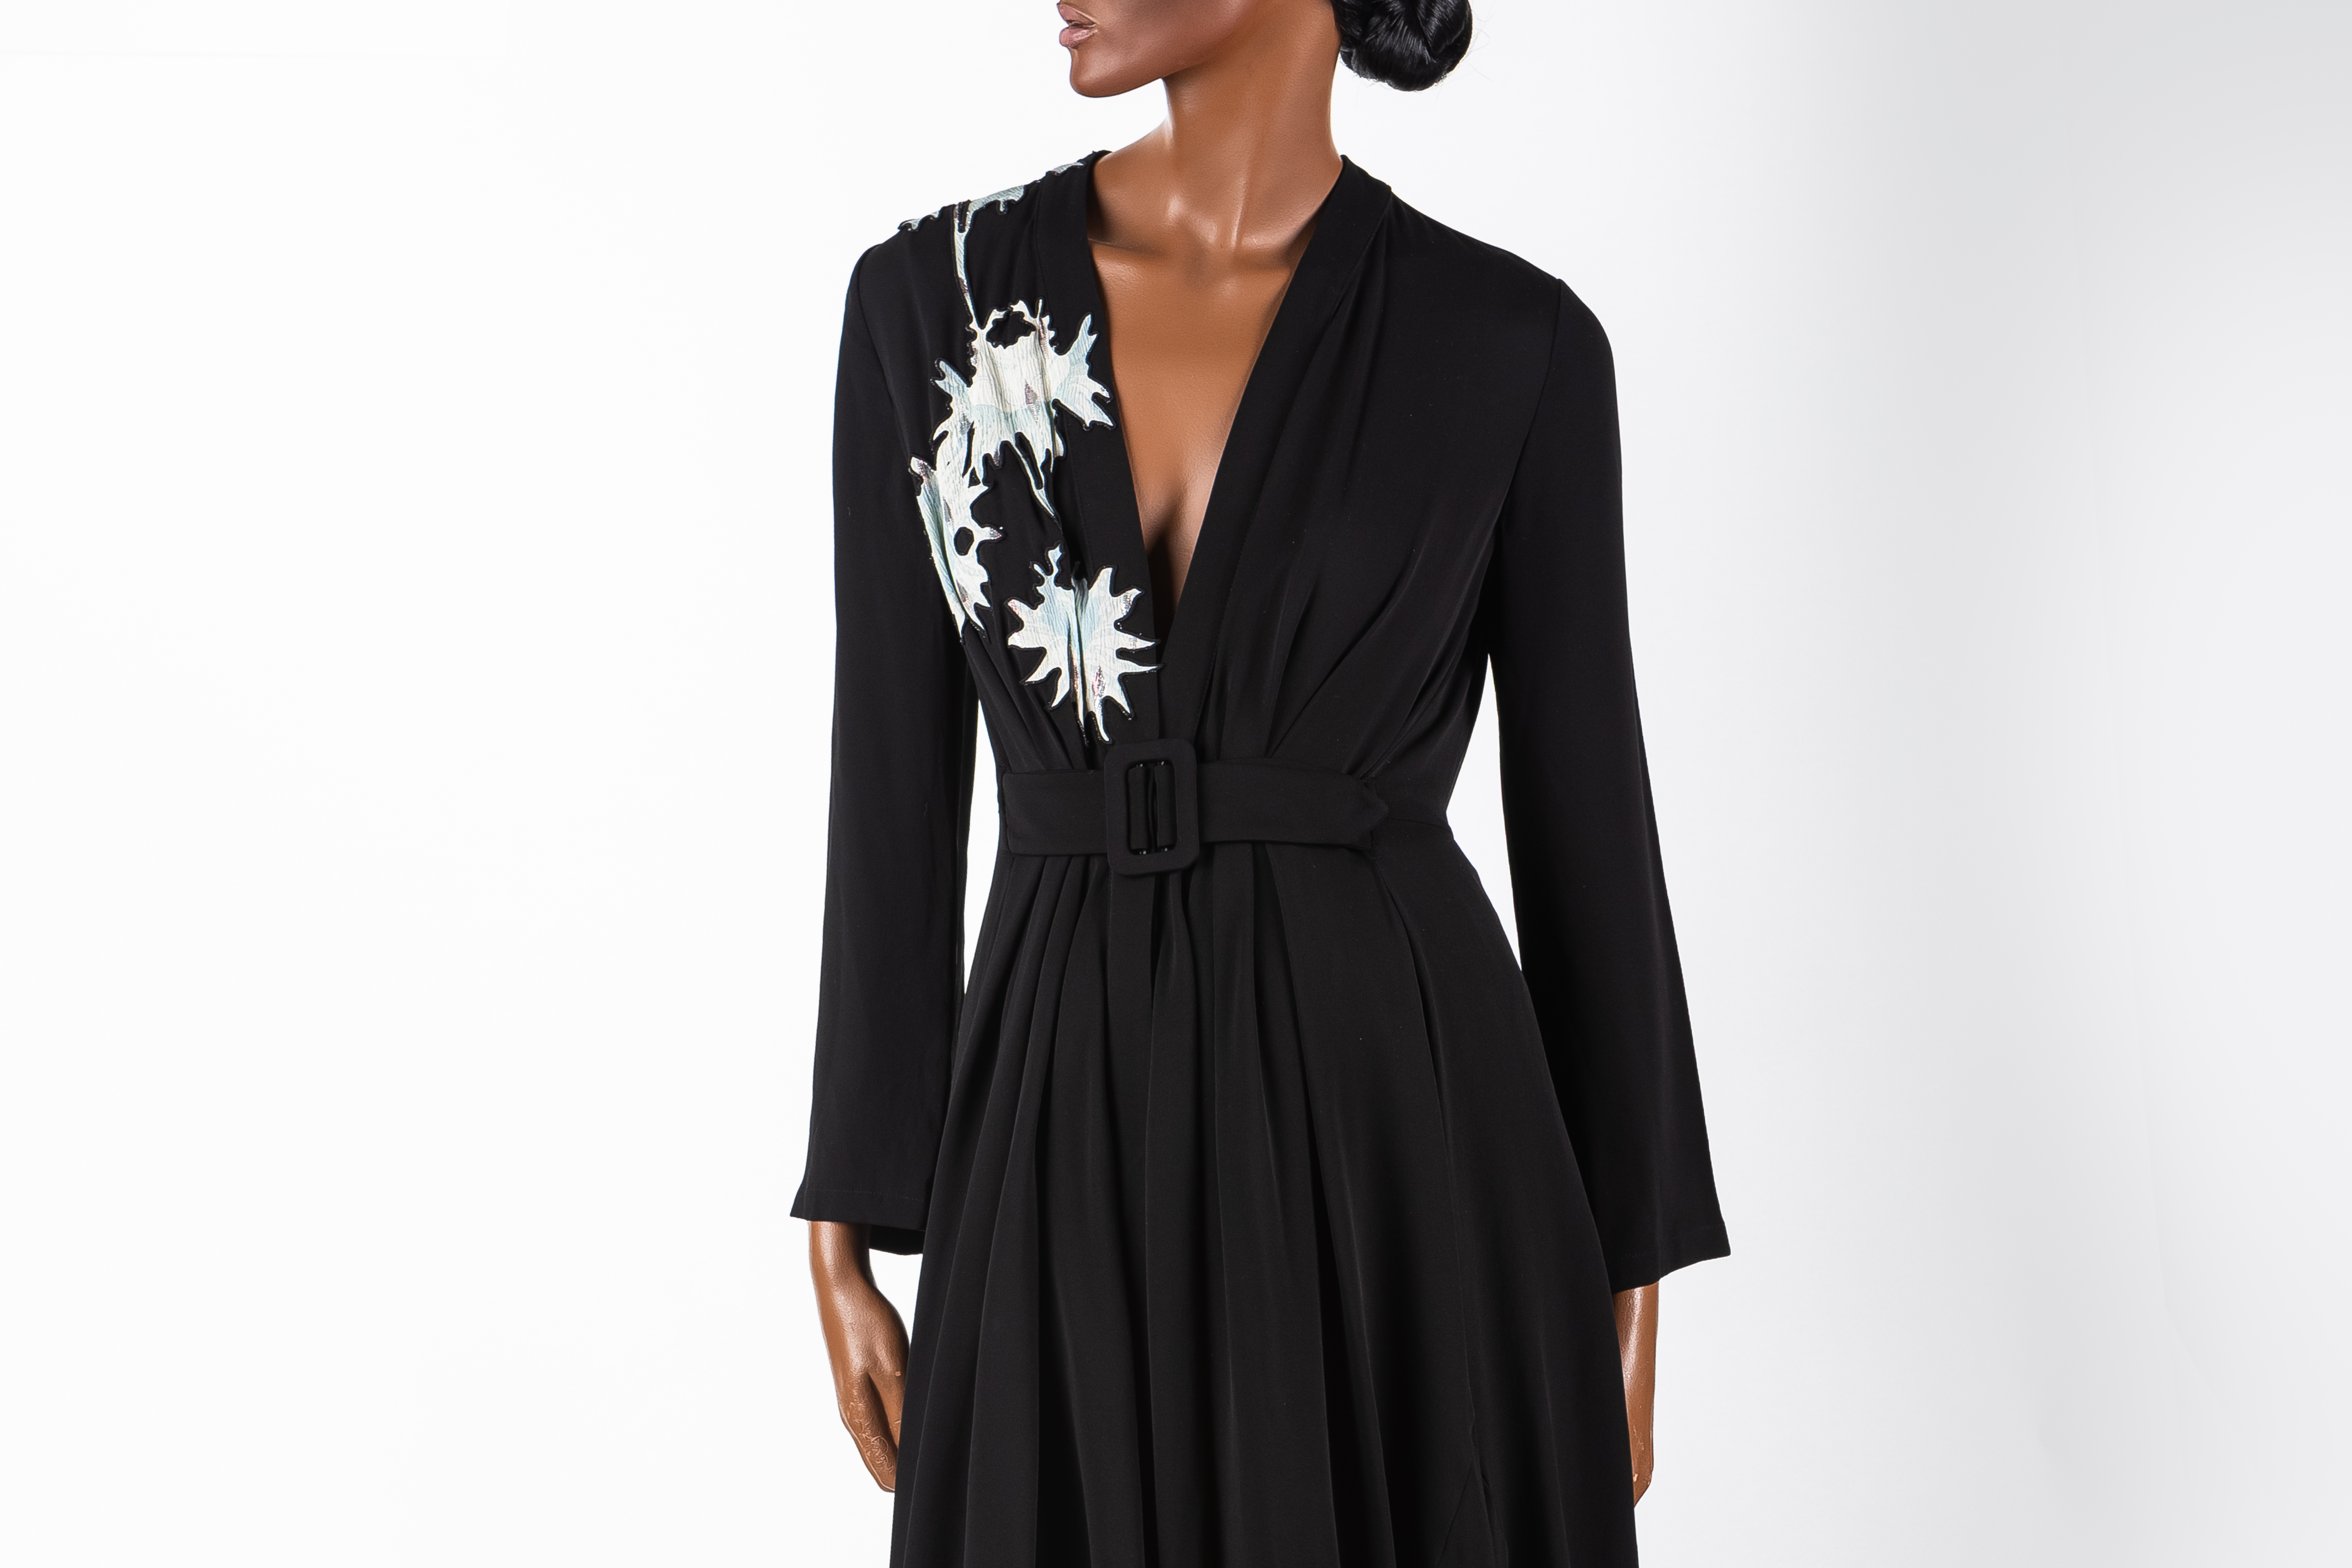 Image: Black and white silk georgette dress by Giorgio Armani